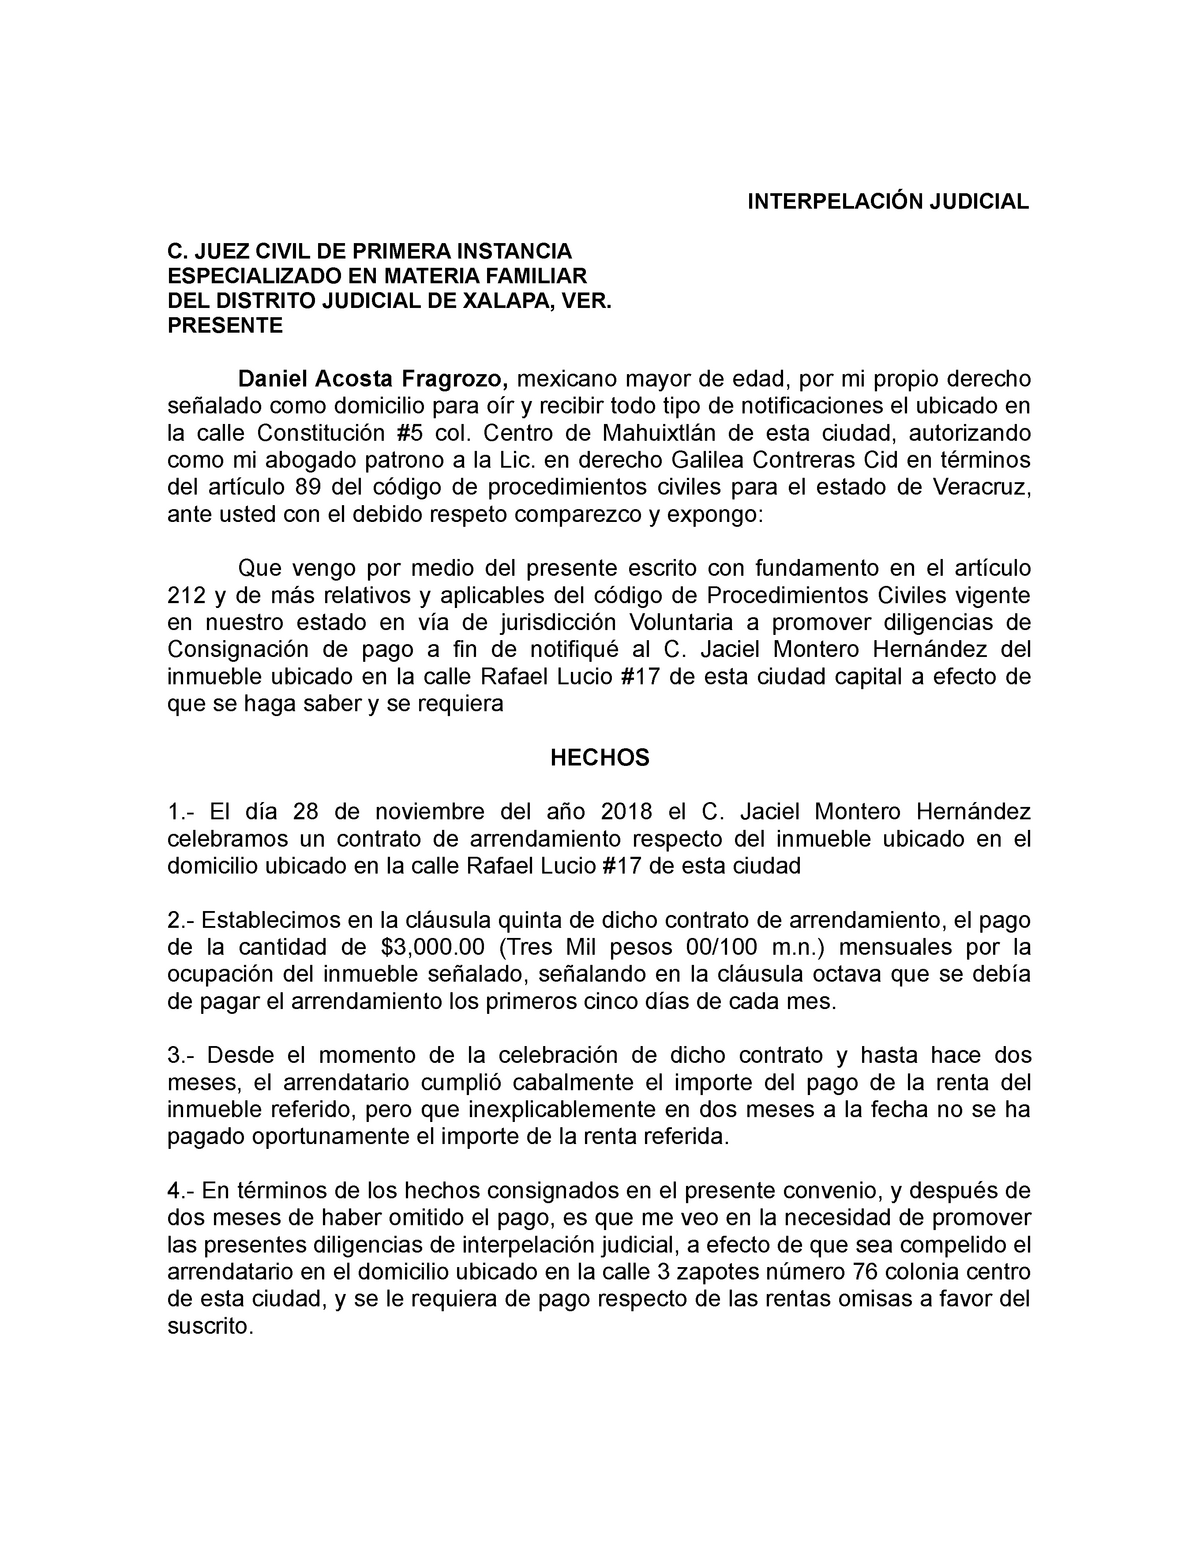 Interpelacion- Judicial - INTERPELACIÓN JUDICIAL C. JUEZ CIVIL DE PRIMERA  INSTANCIA ESPECIALIZADO EN - Studocu